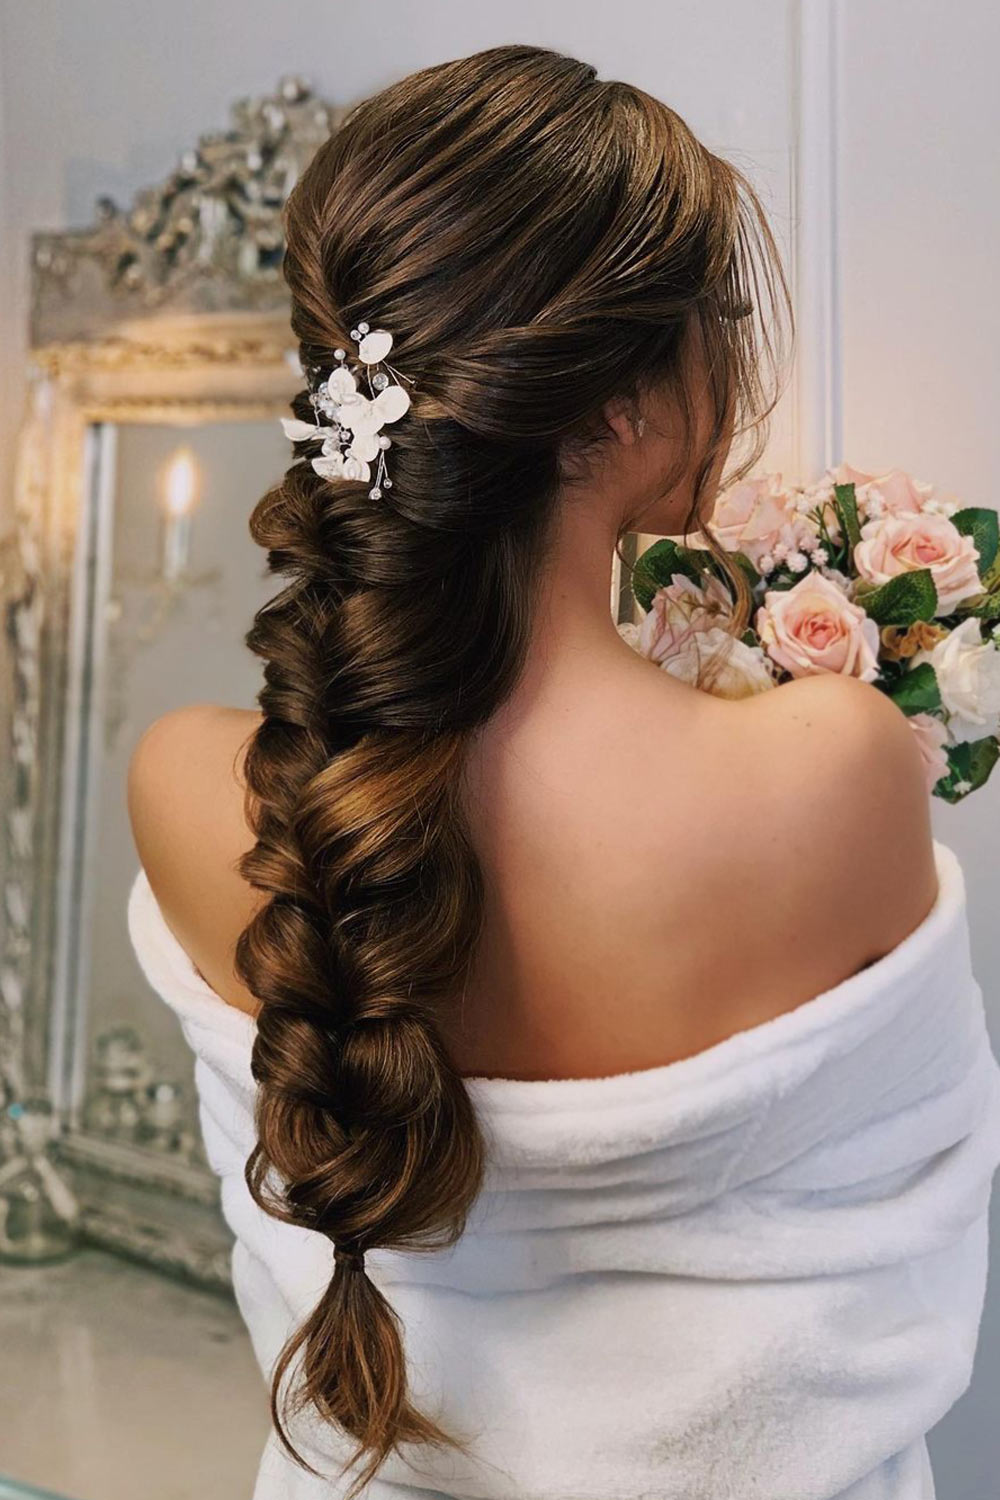 11 Long Hairstyles for a Bride - L'Oréal Paris